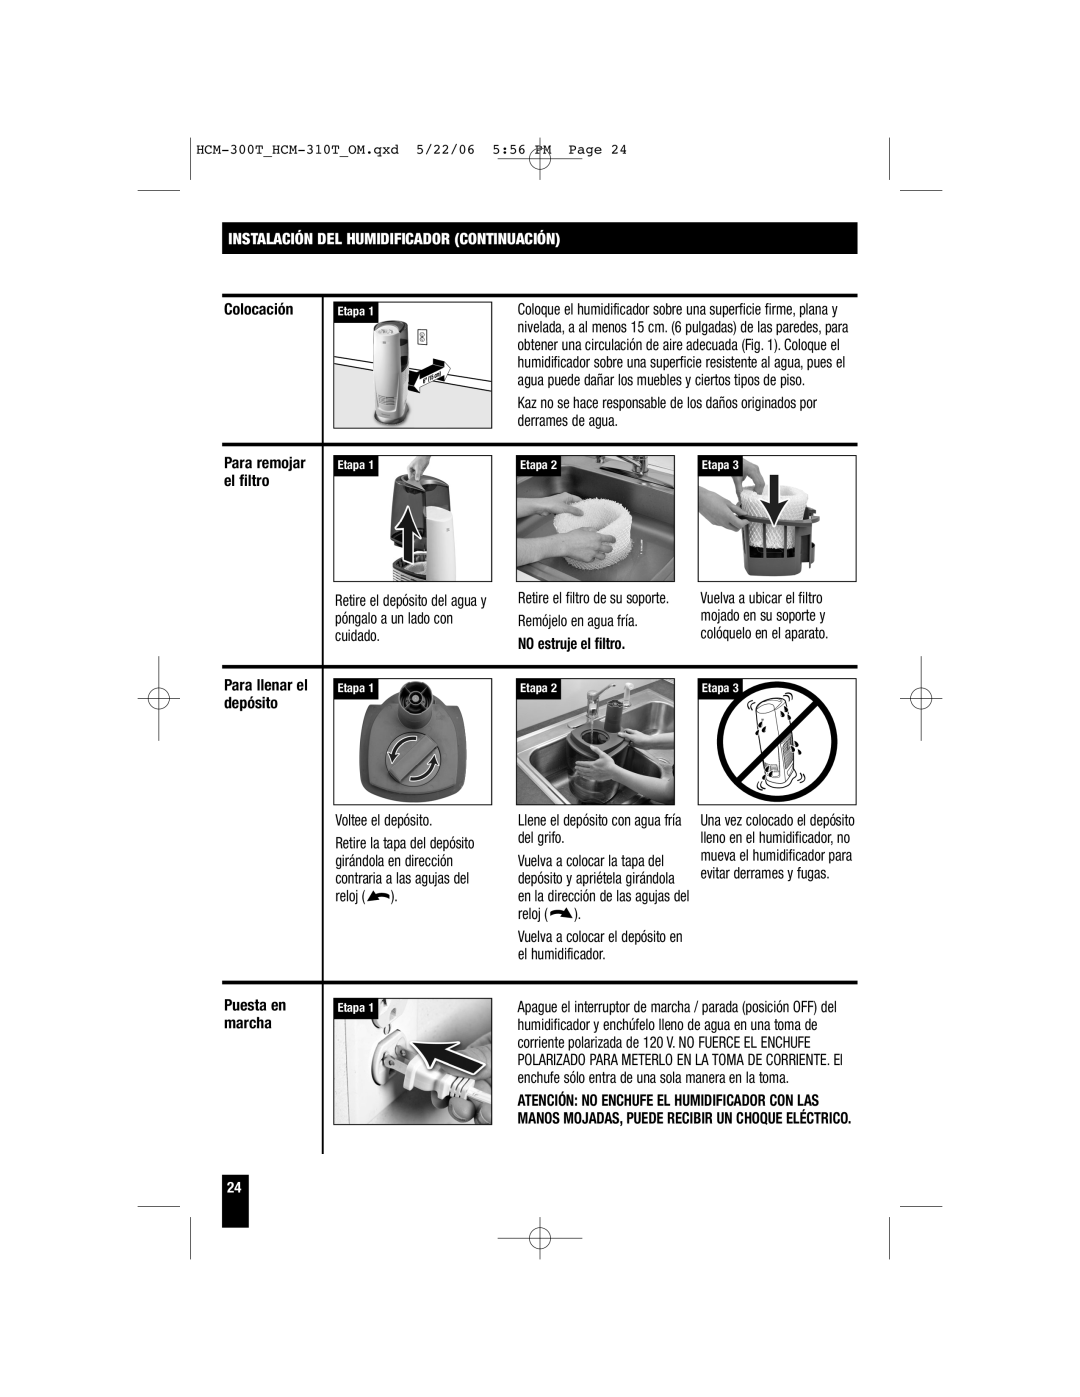 Honeywell HCM-315T, HCM-310T, HCM-300T important safety instructions Instalación Del Humidificador Continuación 